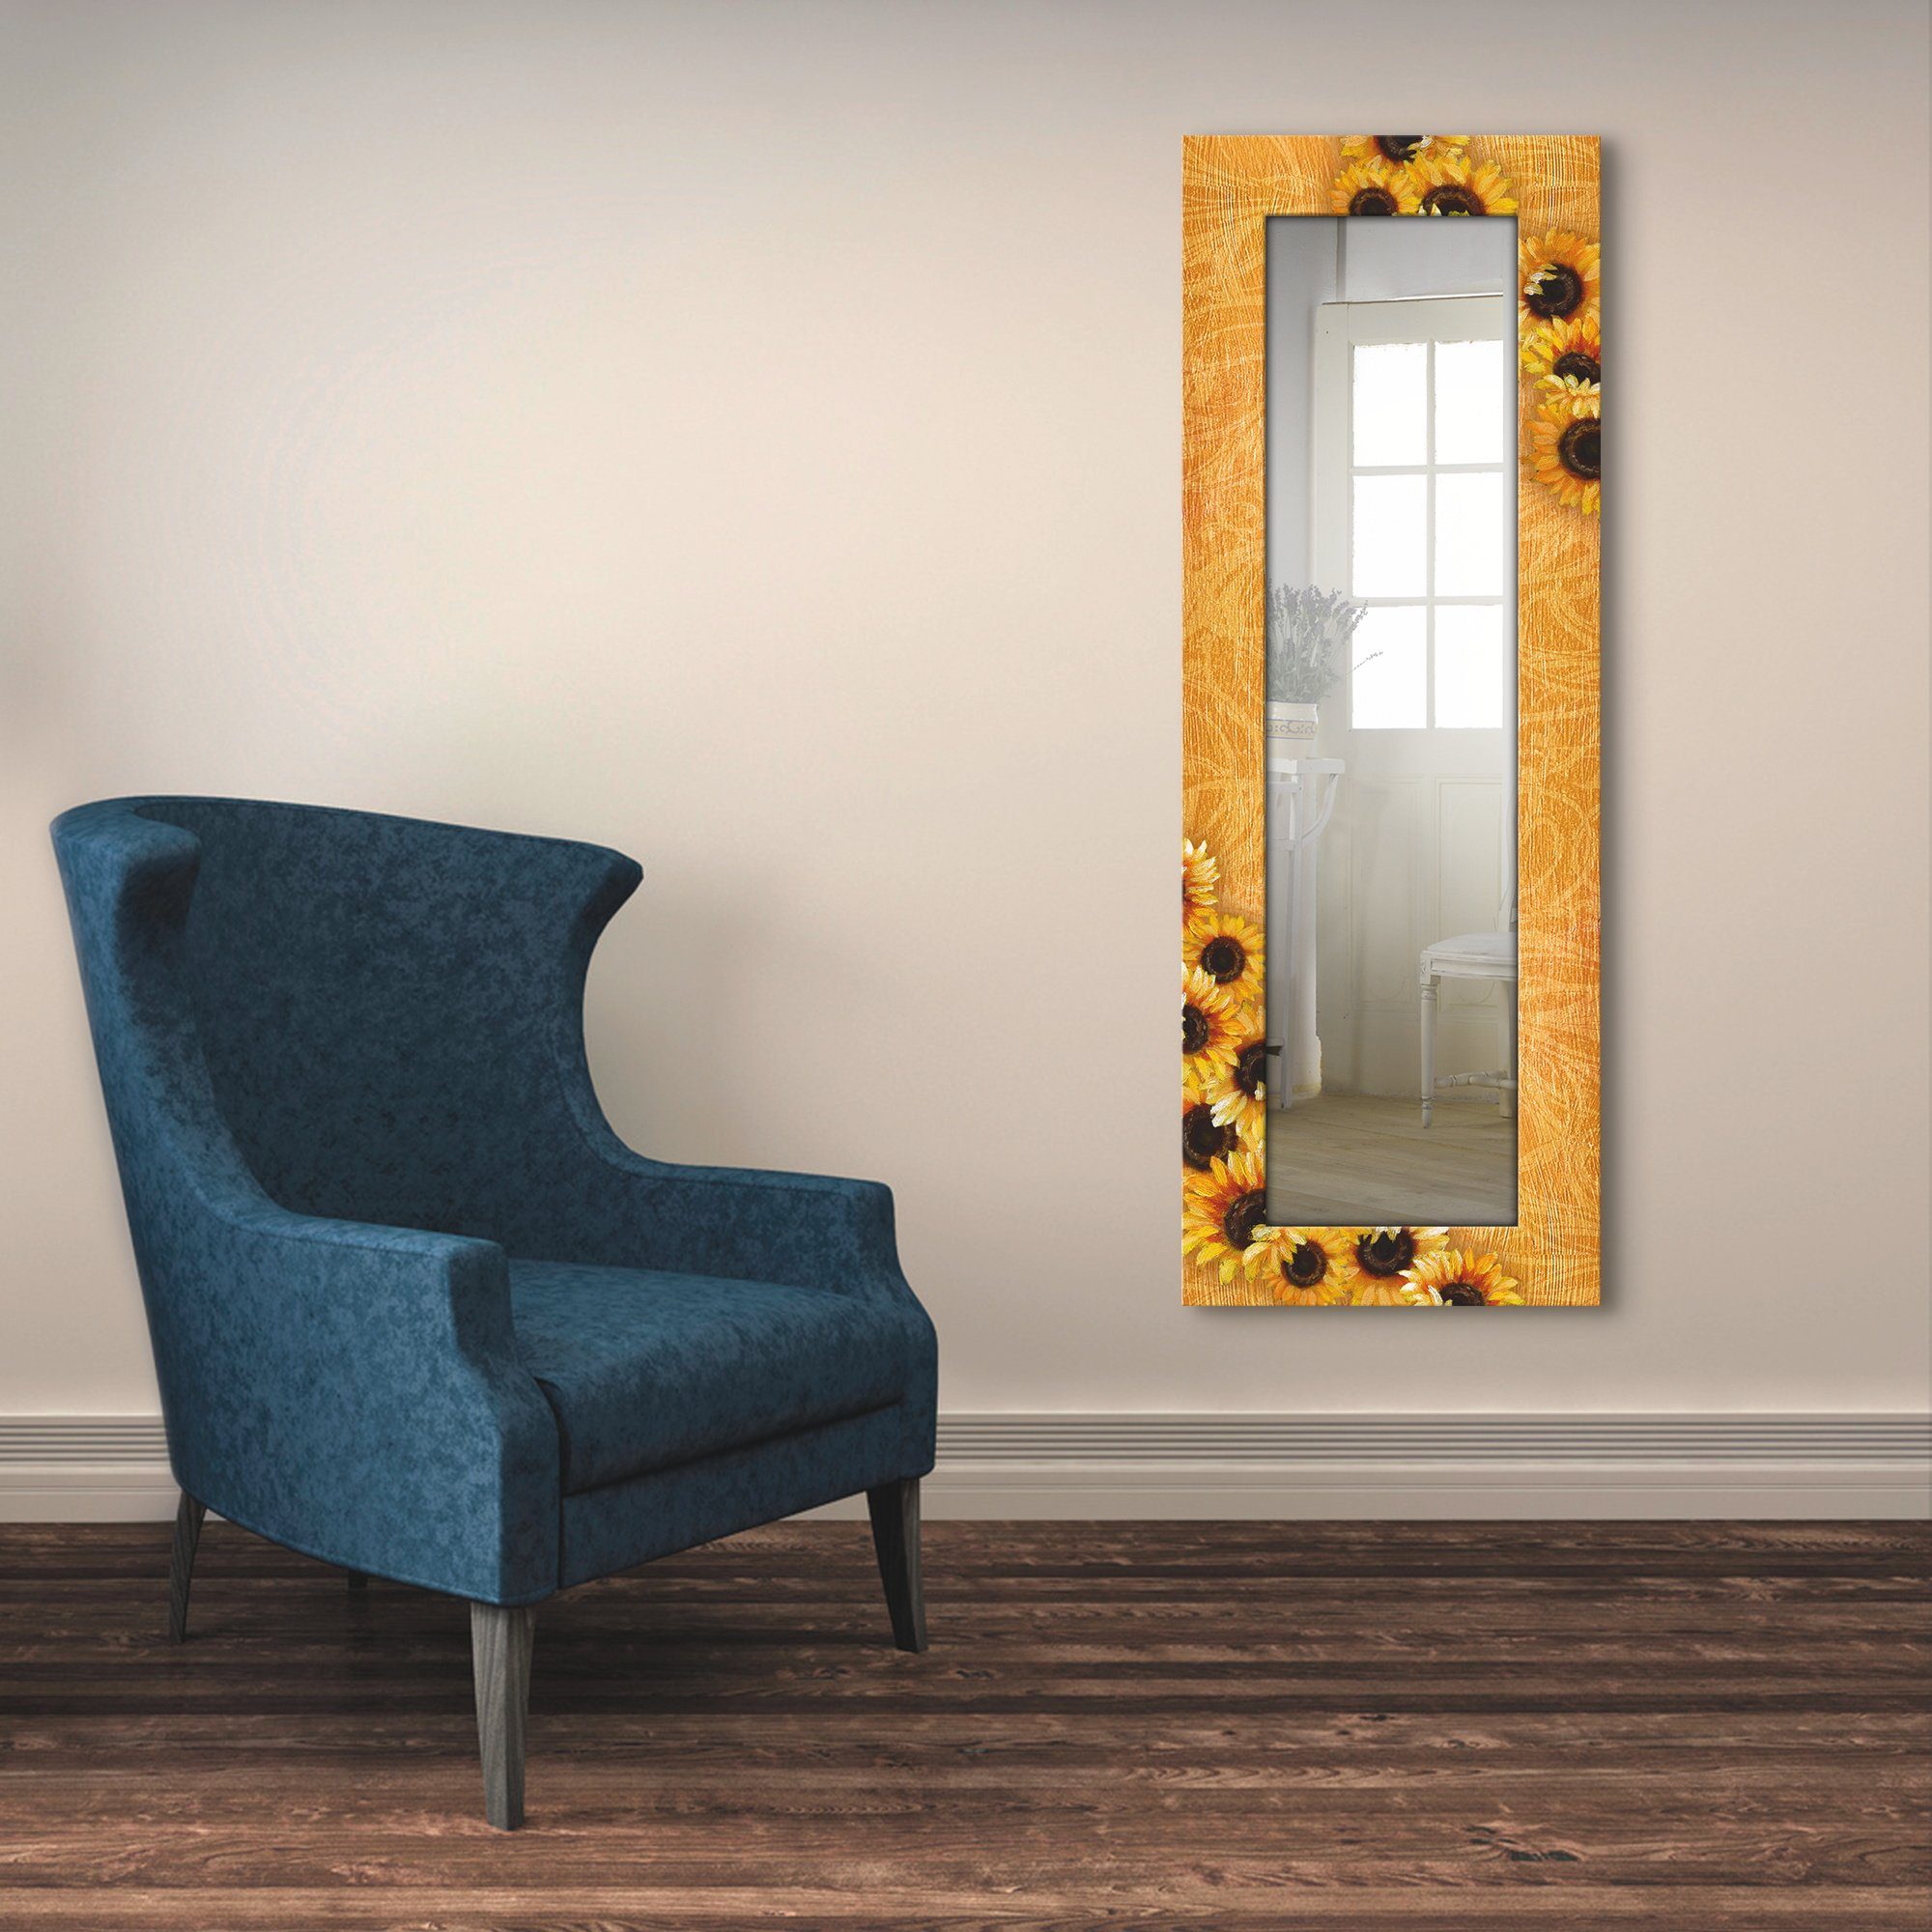 Artland Sierspiegel Zonnebloemen ingelijste spiegel voor het hele lichaam met motiefrand, geschikt voor kleine, smalle hal, halspiegel, mirror spiegel omrand om op te hangen